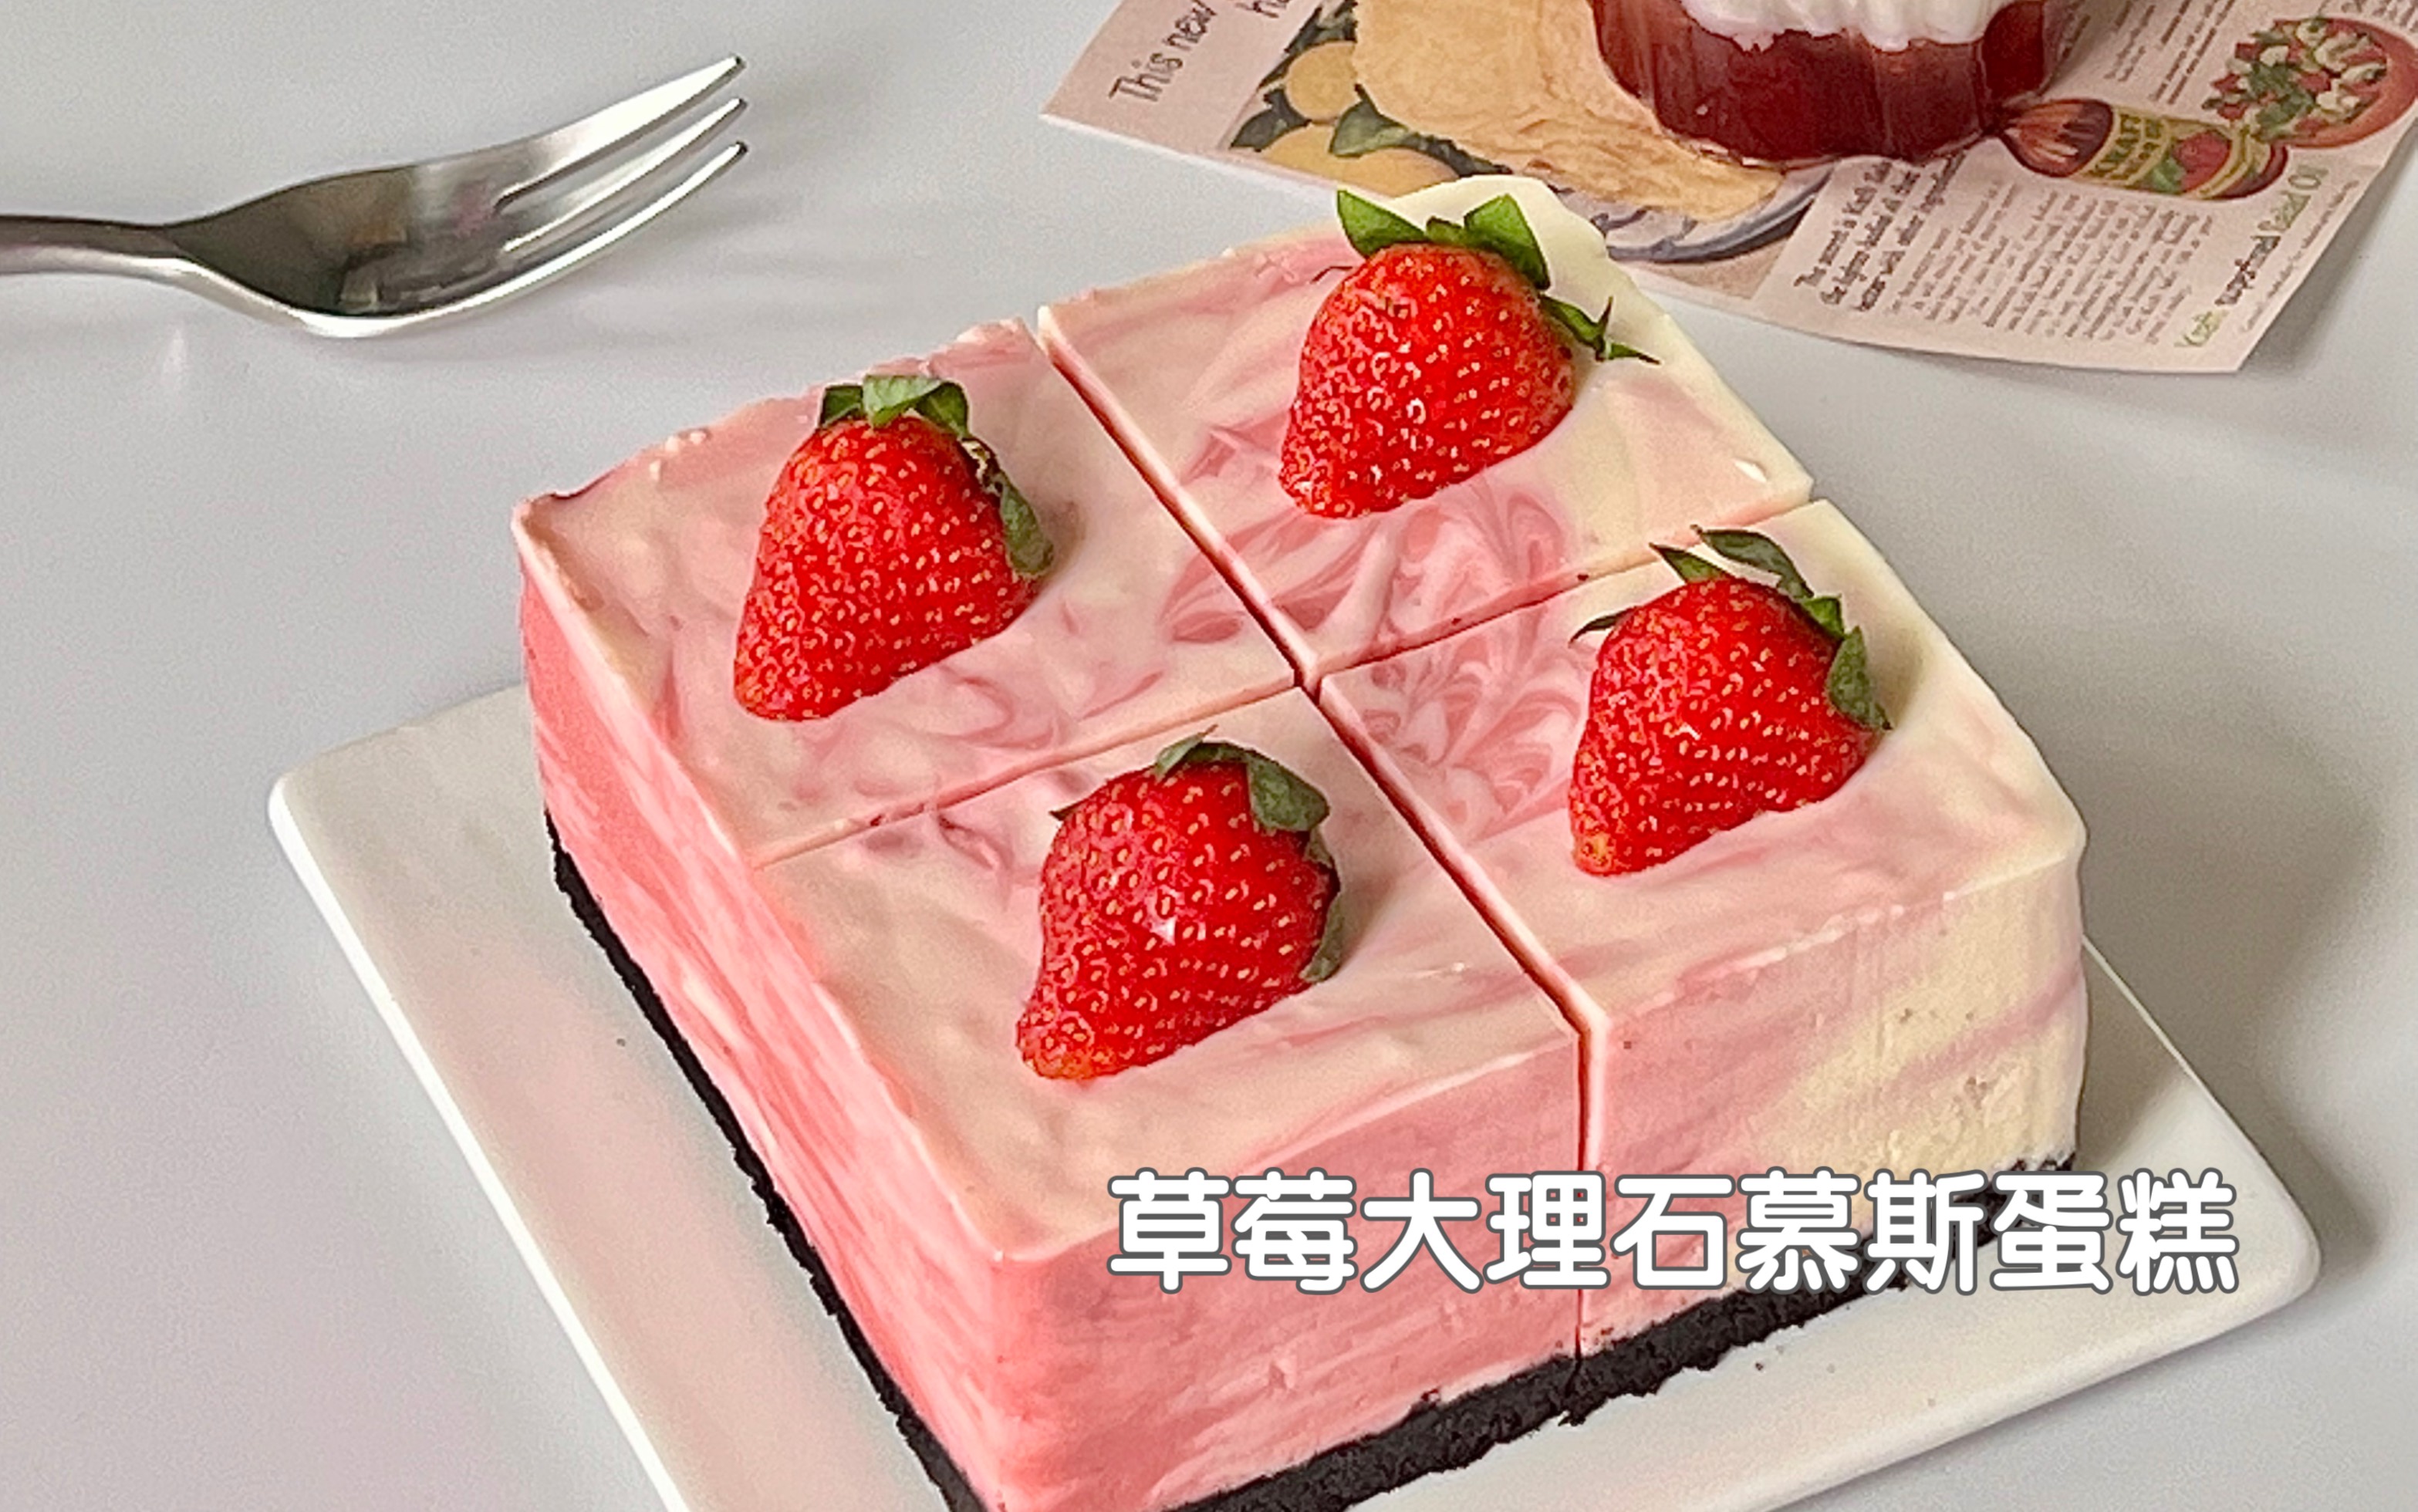 草莓慕斯蛋糕预订,1-3磅蛋糕,198元起预订,花季--深圳一点一刻|壹点壹客